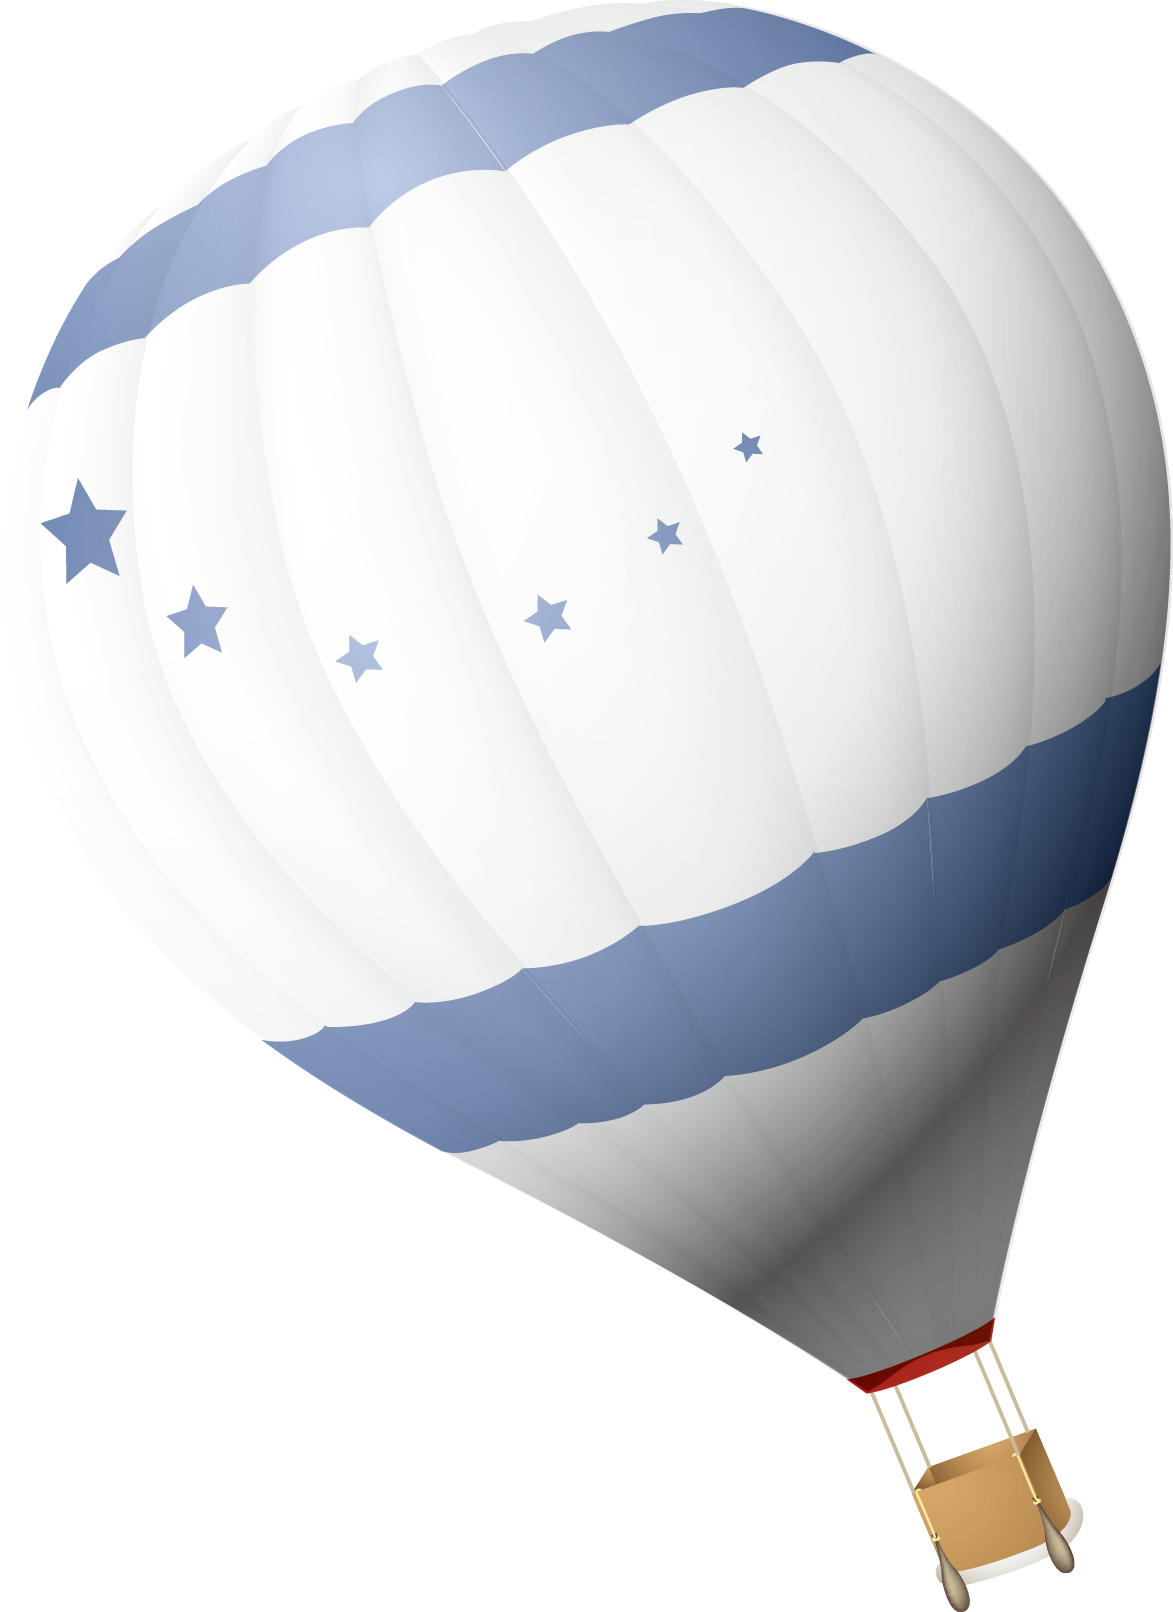 彩色熱氣球PPT素材